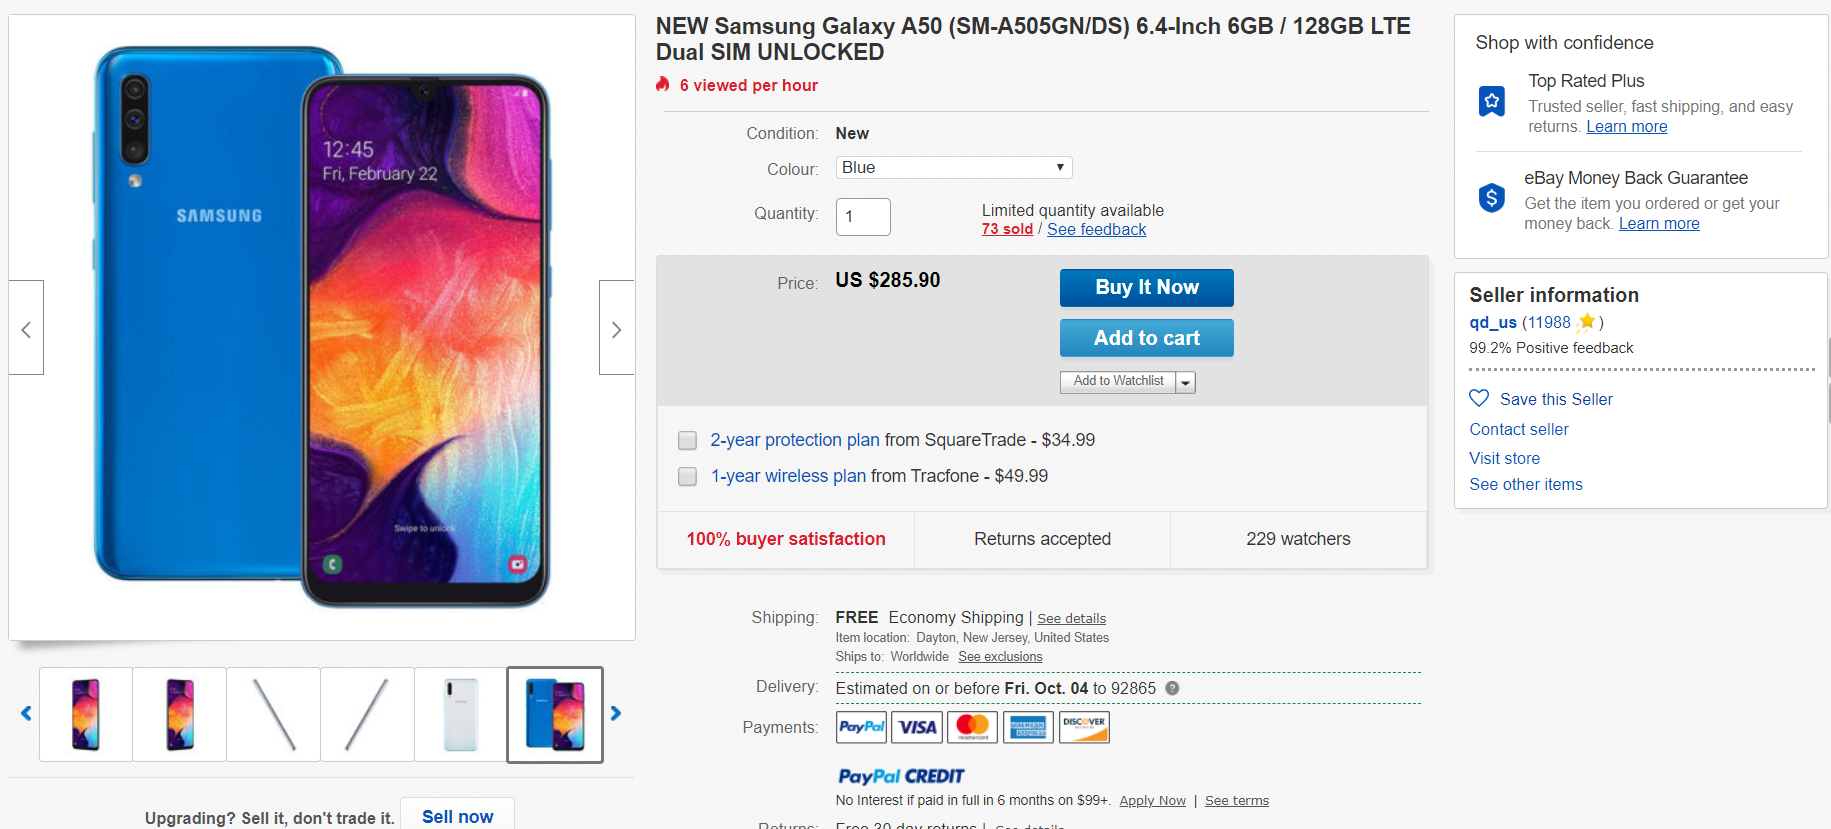 Samsung's international dual-SIM Galaxy A50 is just $285.90 on eBay 2